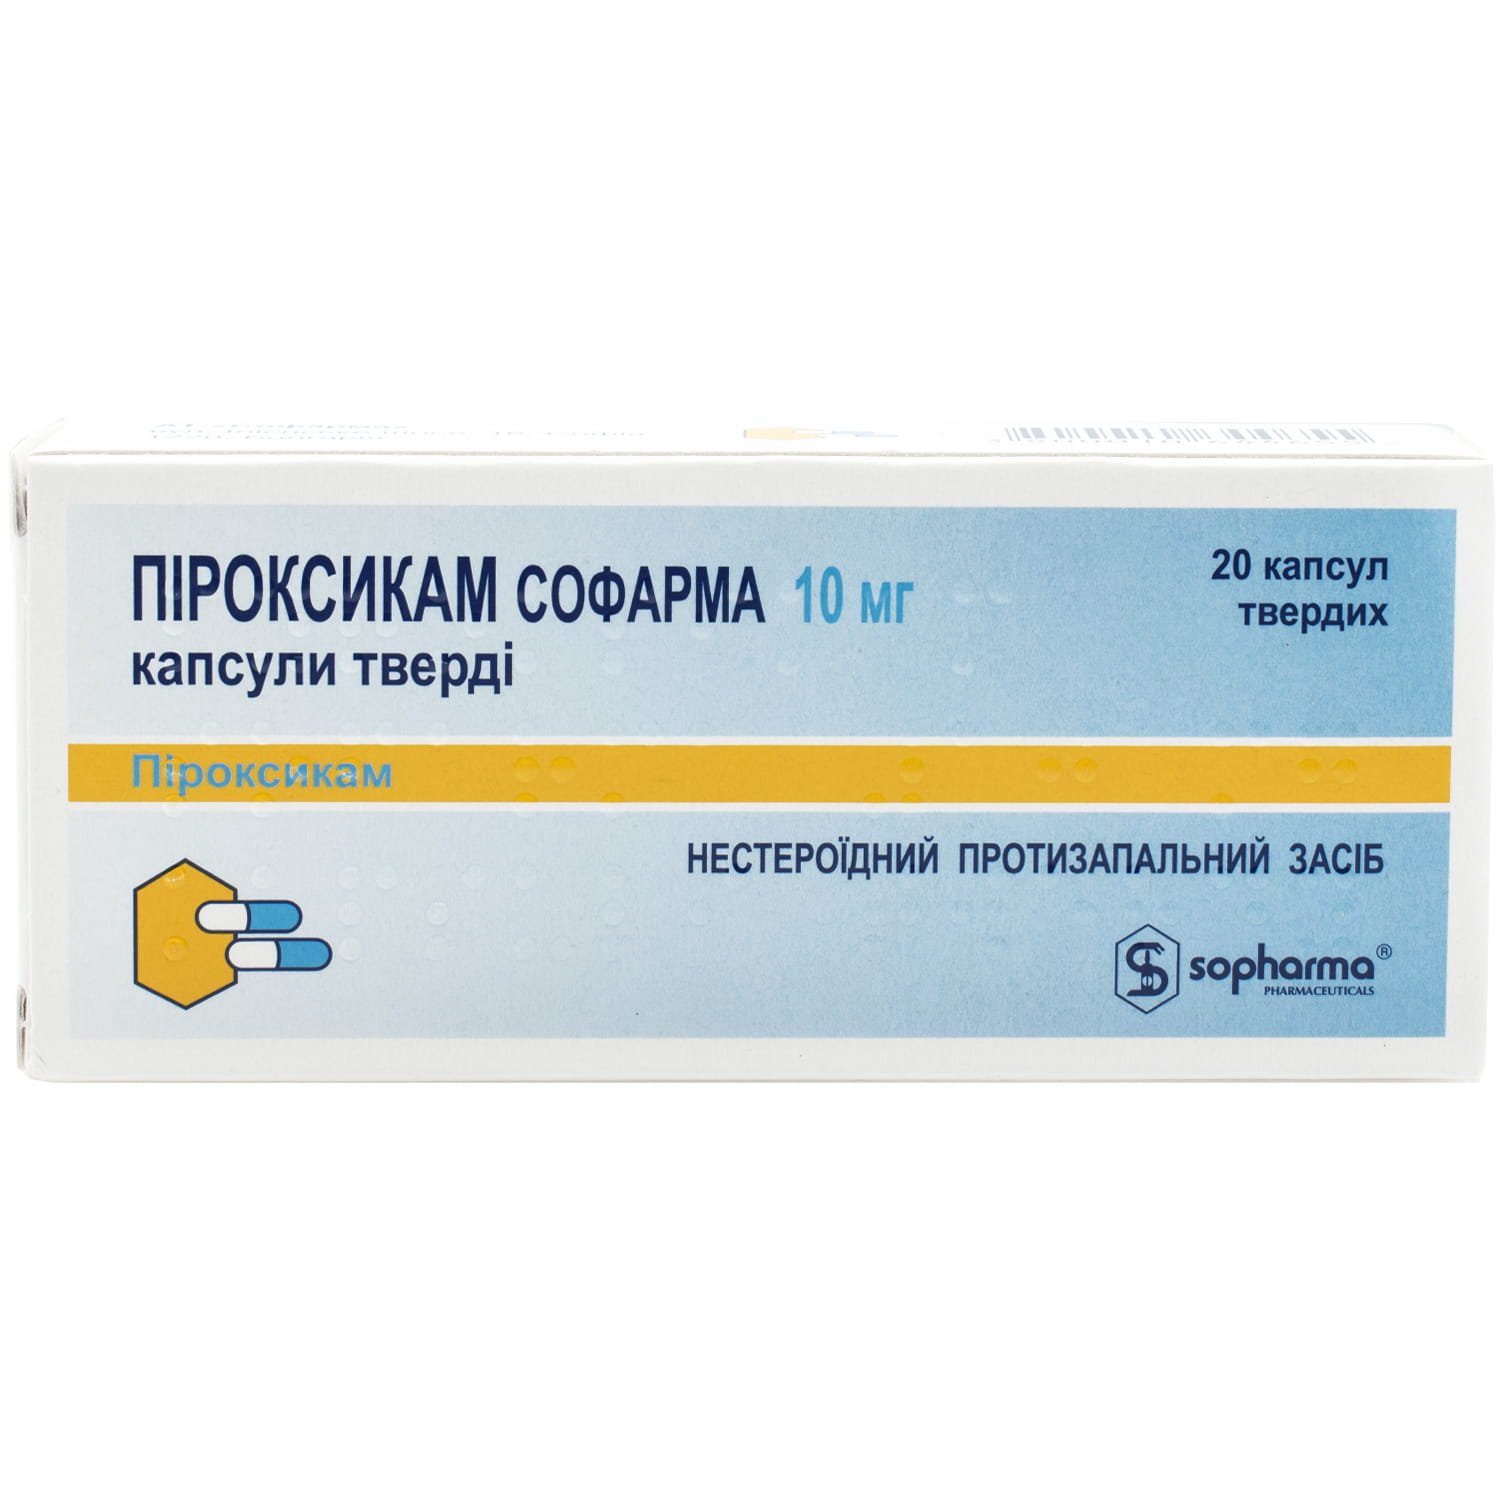 Пироксикам-Софарма капсулы по 10 мг, 20 шт.: инструкция, цена, отзывы .